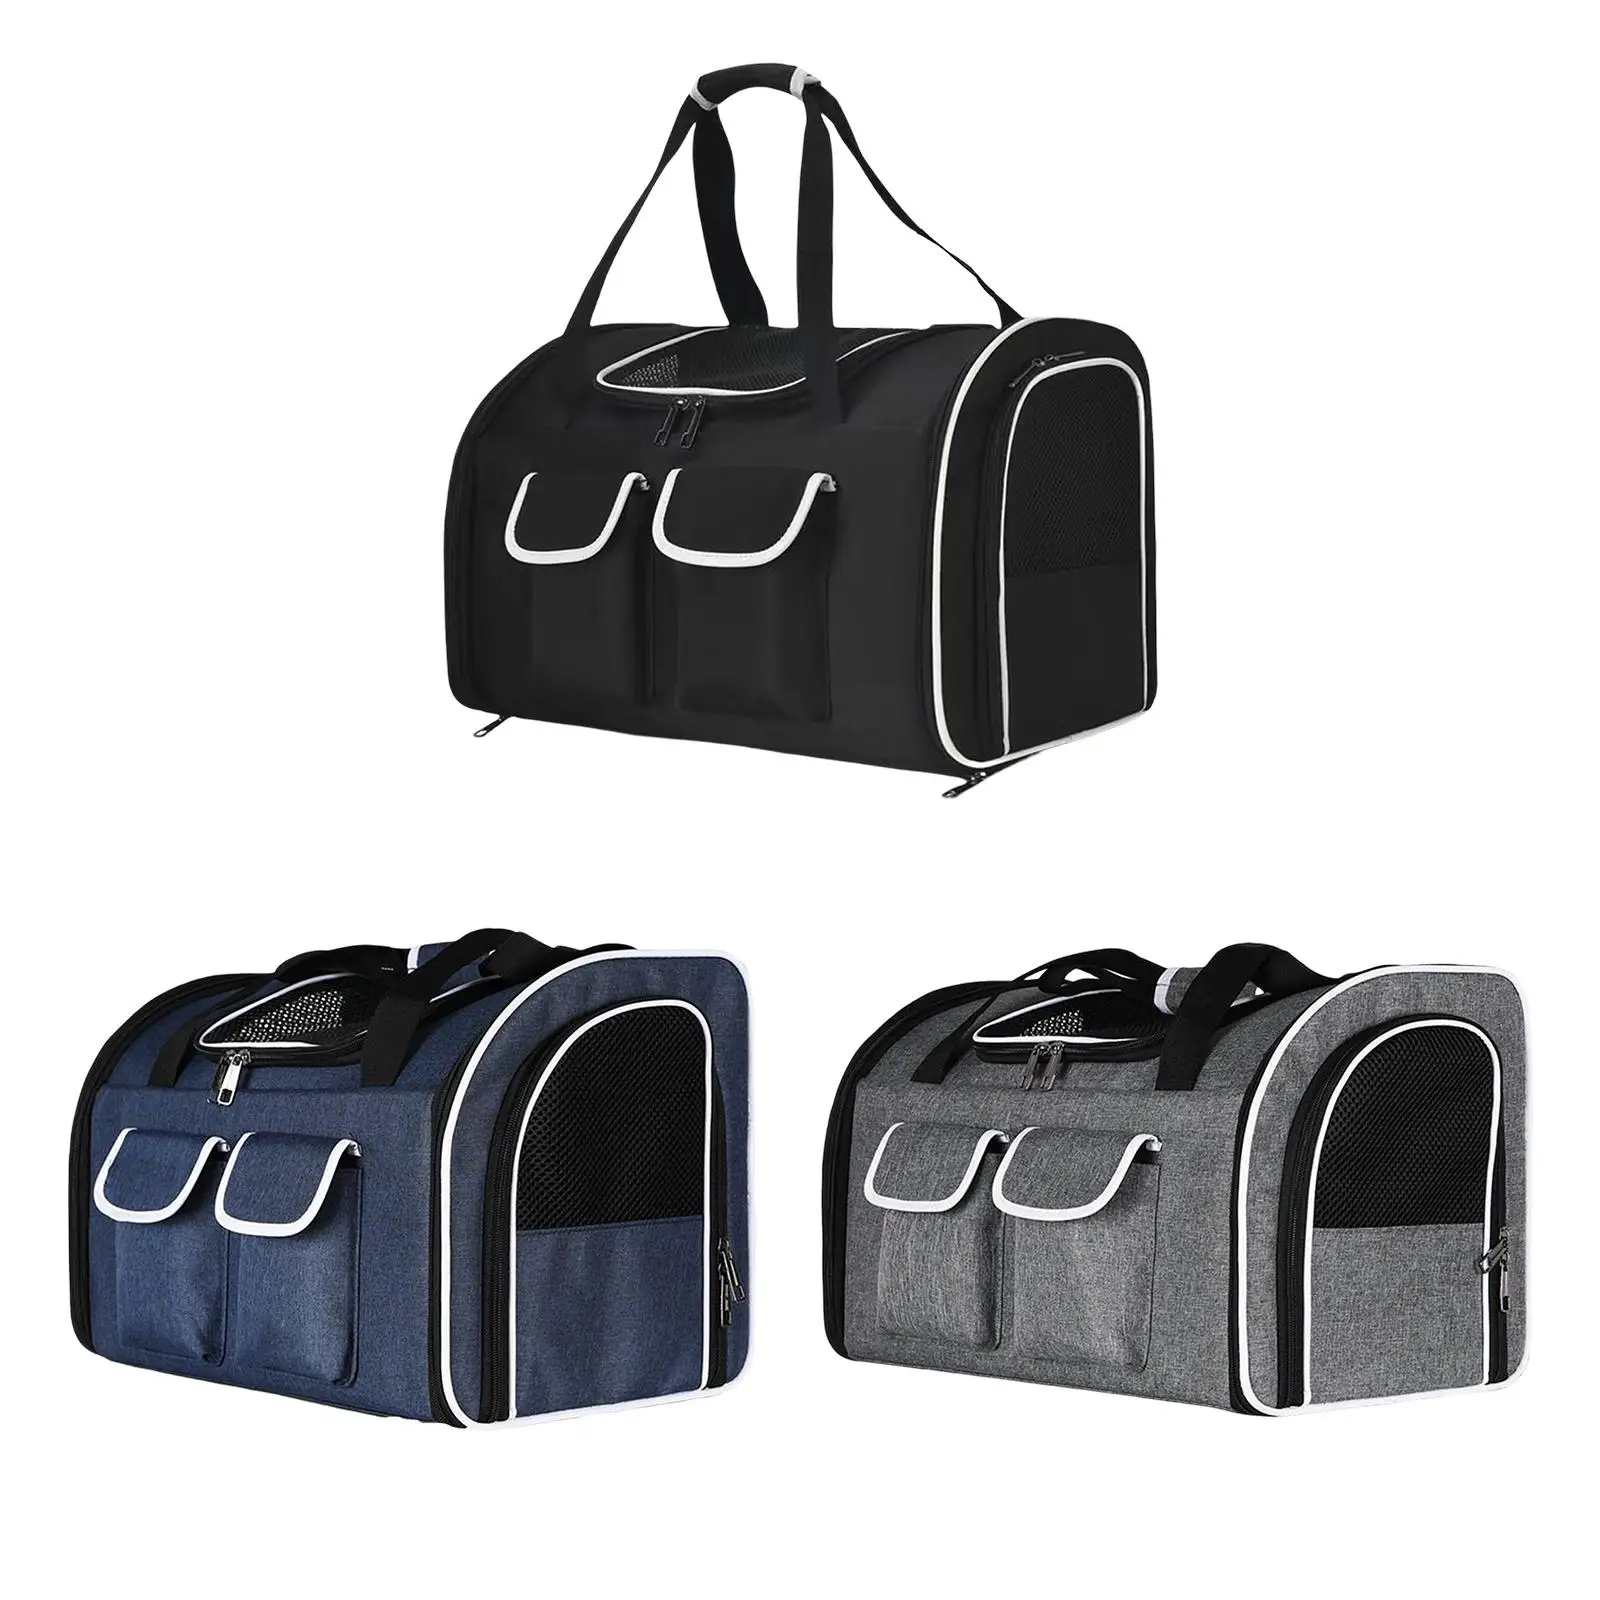 Pet Cat Carrier Backpack Shoulder Strap Carrying Bag Ventilation Breathable Dog Carrier Pet Travel Bag for Walking Outdoor Use